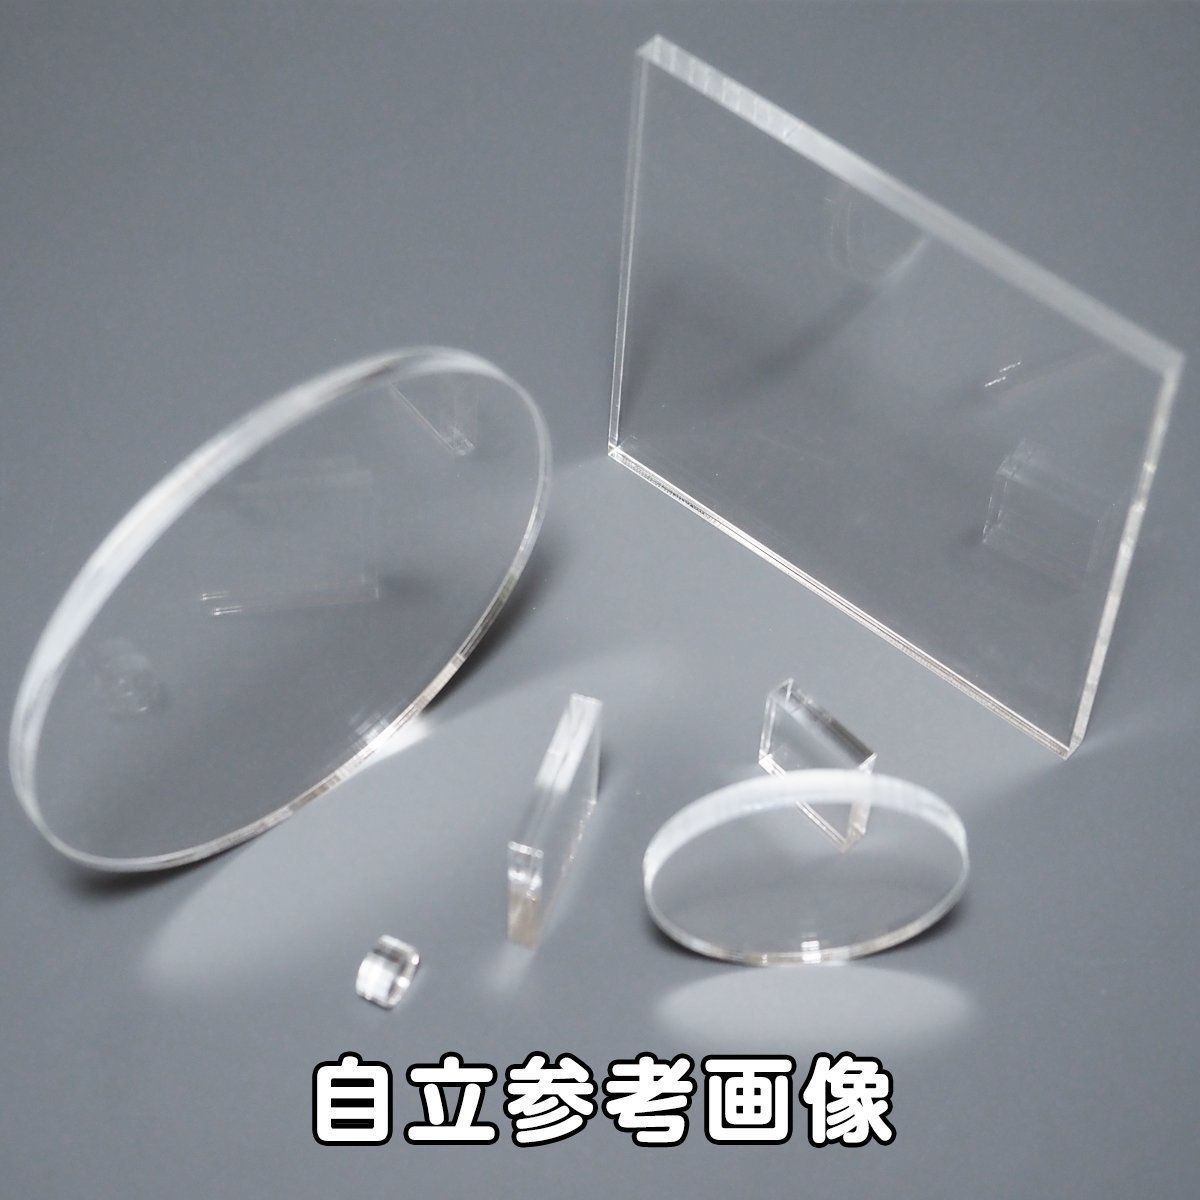 透明ポリカーボネート板5㍉厚x900x1150(幅x長さ㍉) - 工具、DIY用品